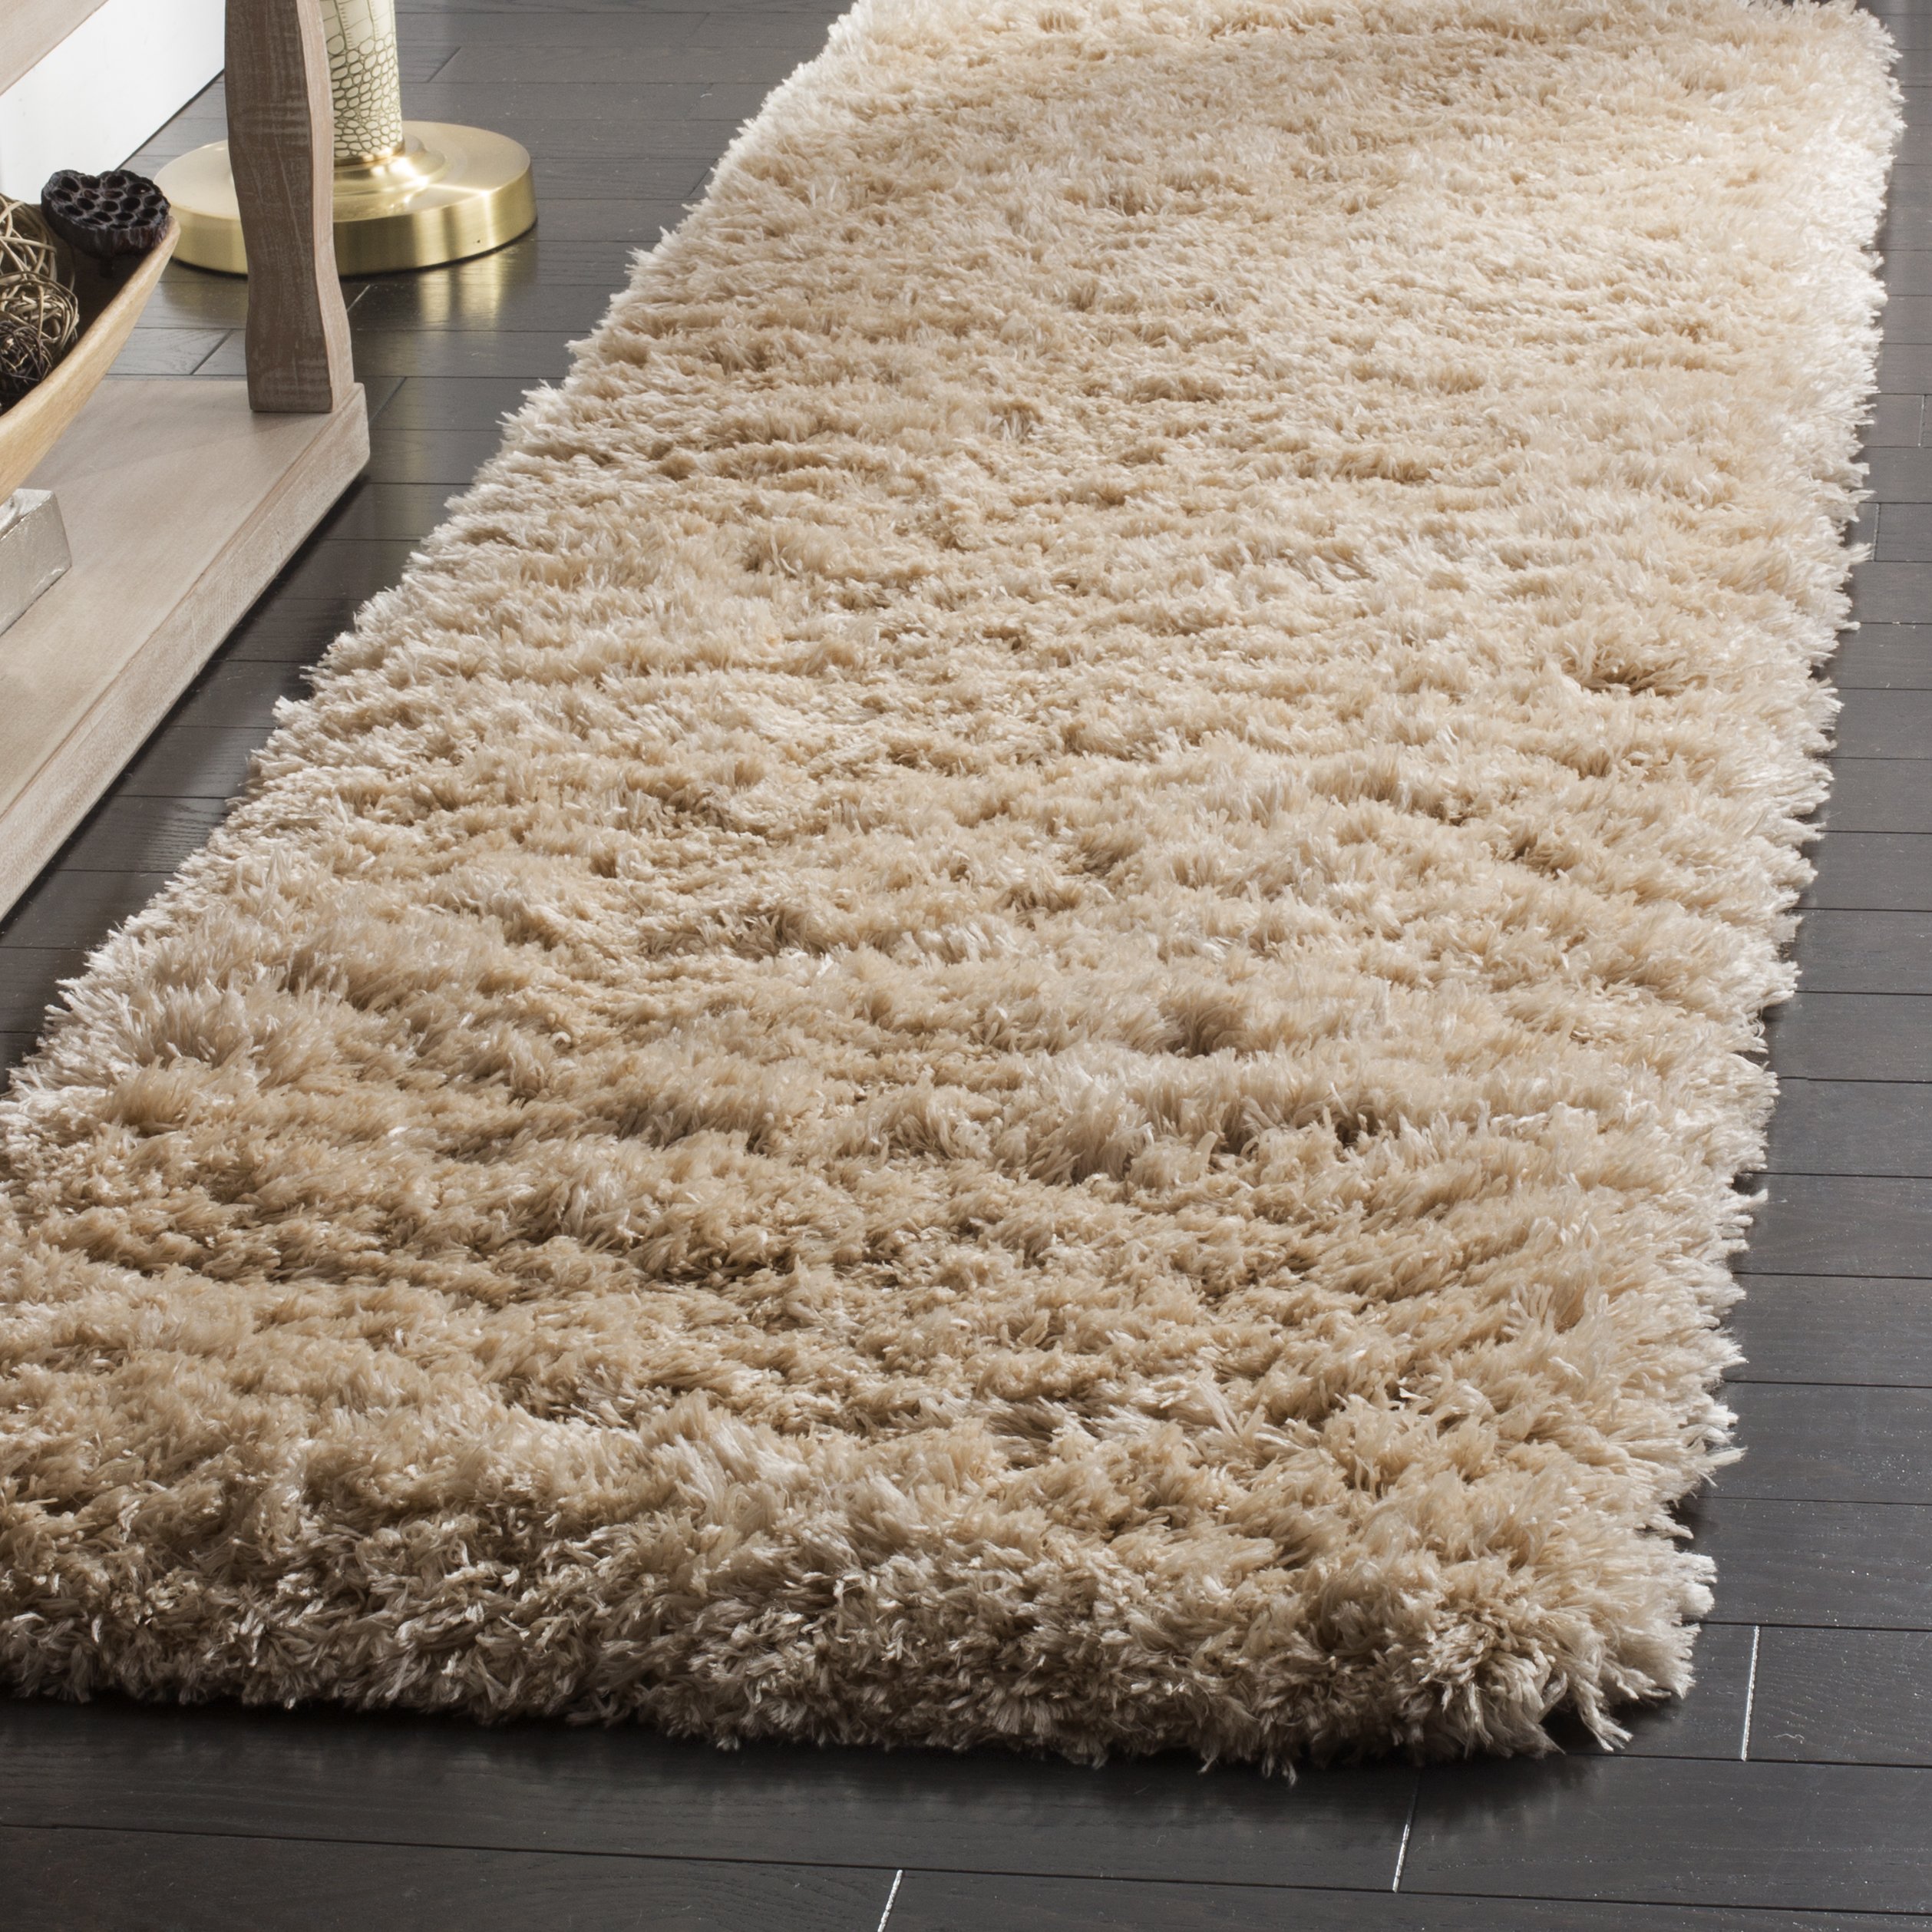  Safavieh Polar Shag 系列长条地毯 - 2 英尺 3 英尺 x 6 英尺，浅米色，纯色迷人设计，不脱落且易于护理，3 英寸厚，非常适合客厅、卧室的人流密集区域...